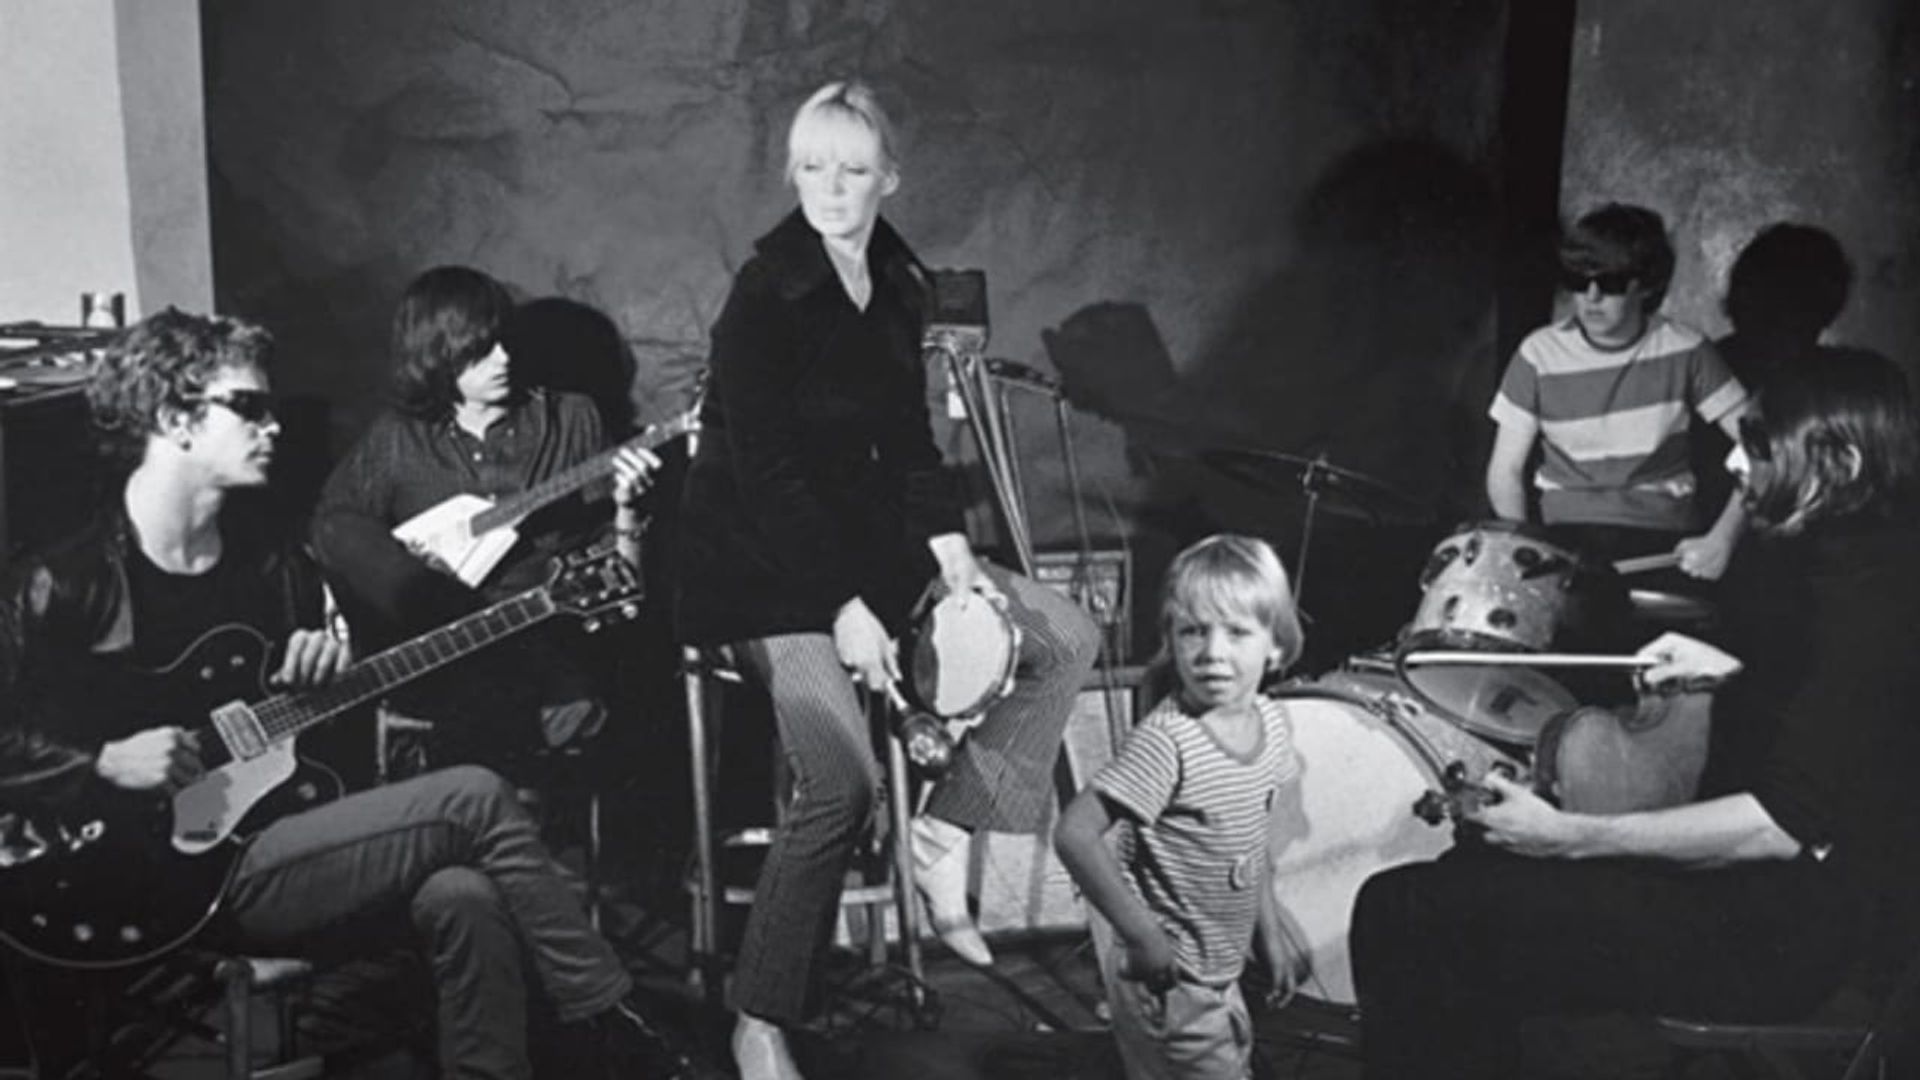 The Velvet Underground and Nico background